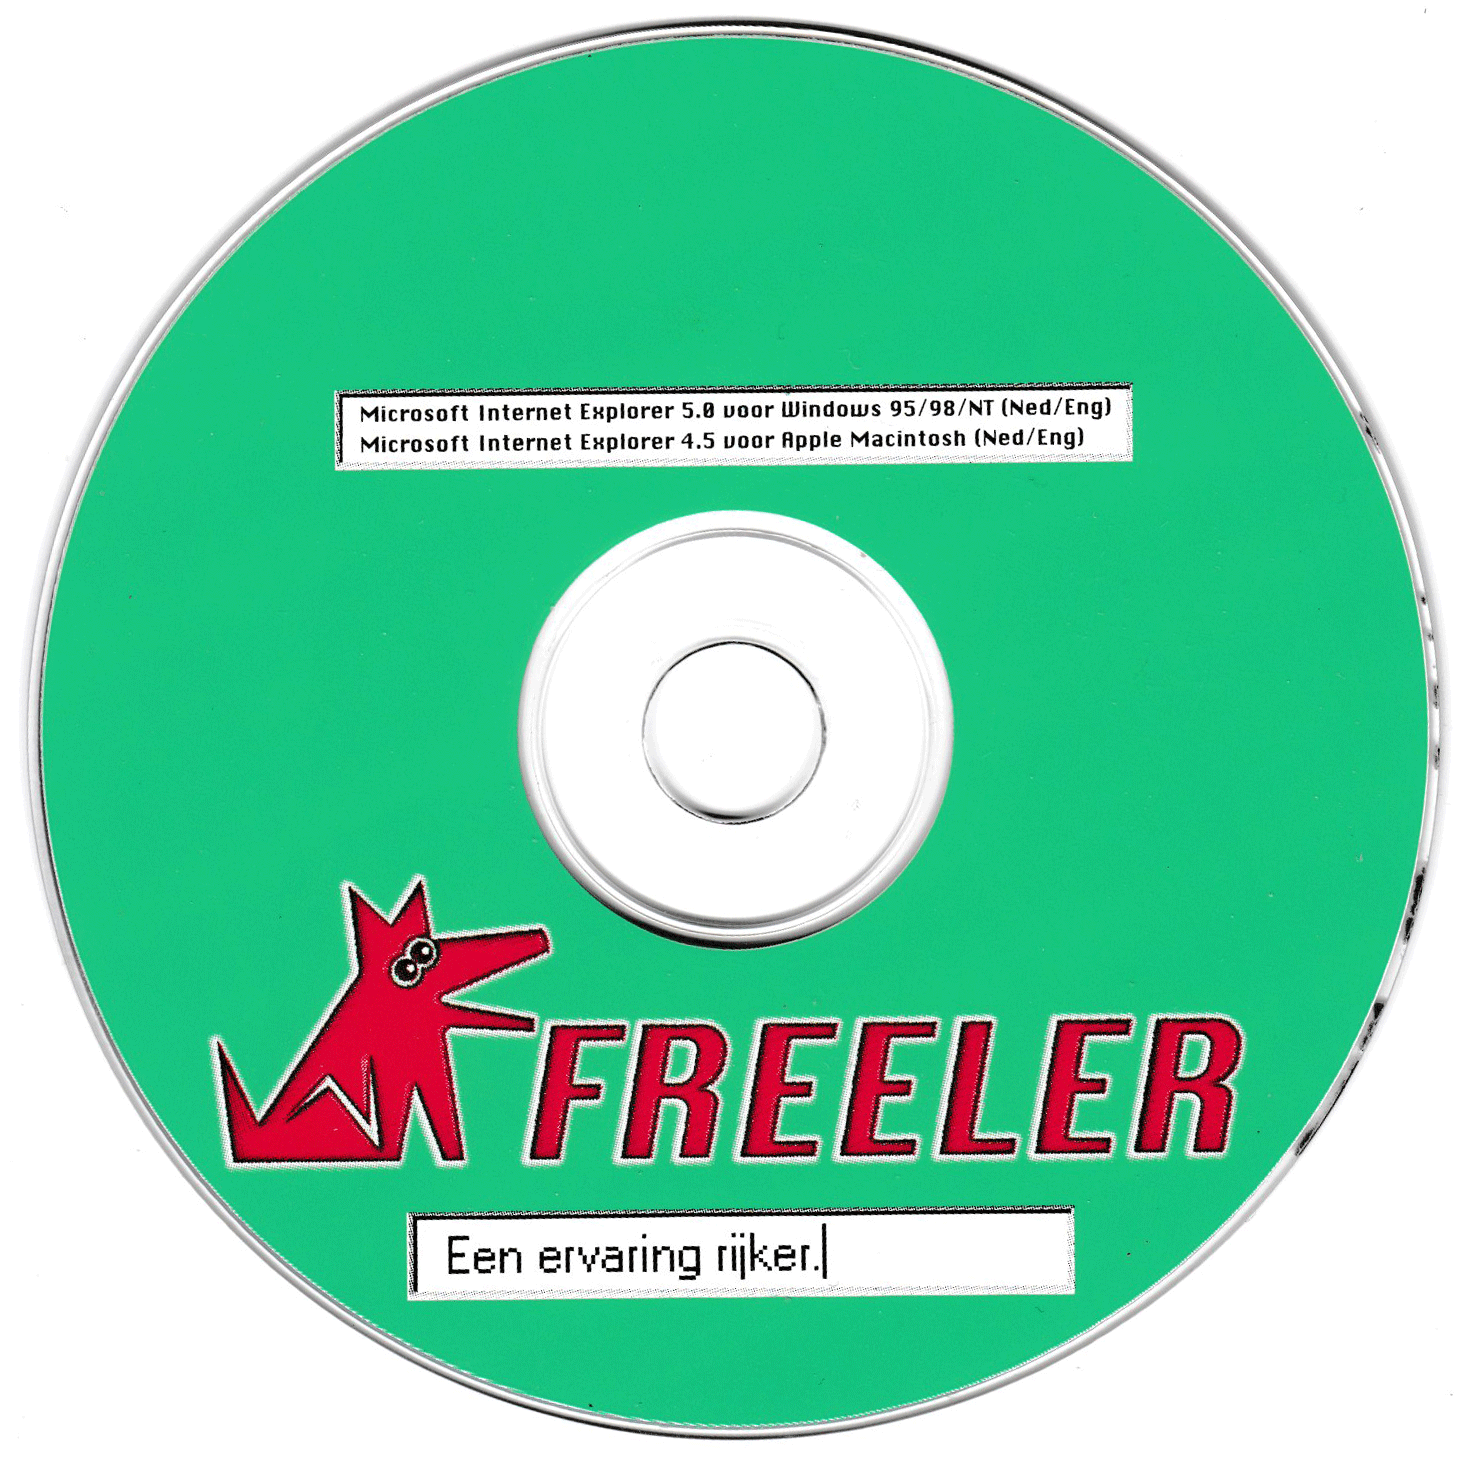 the Freeler CD ROM